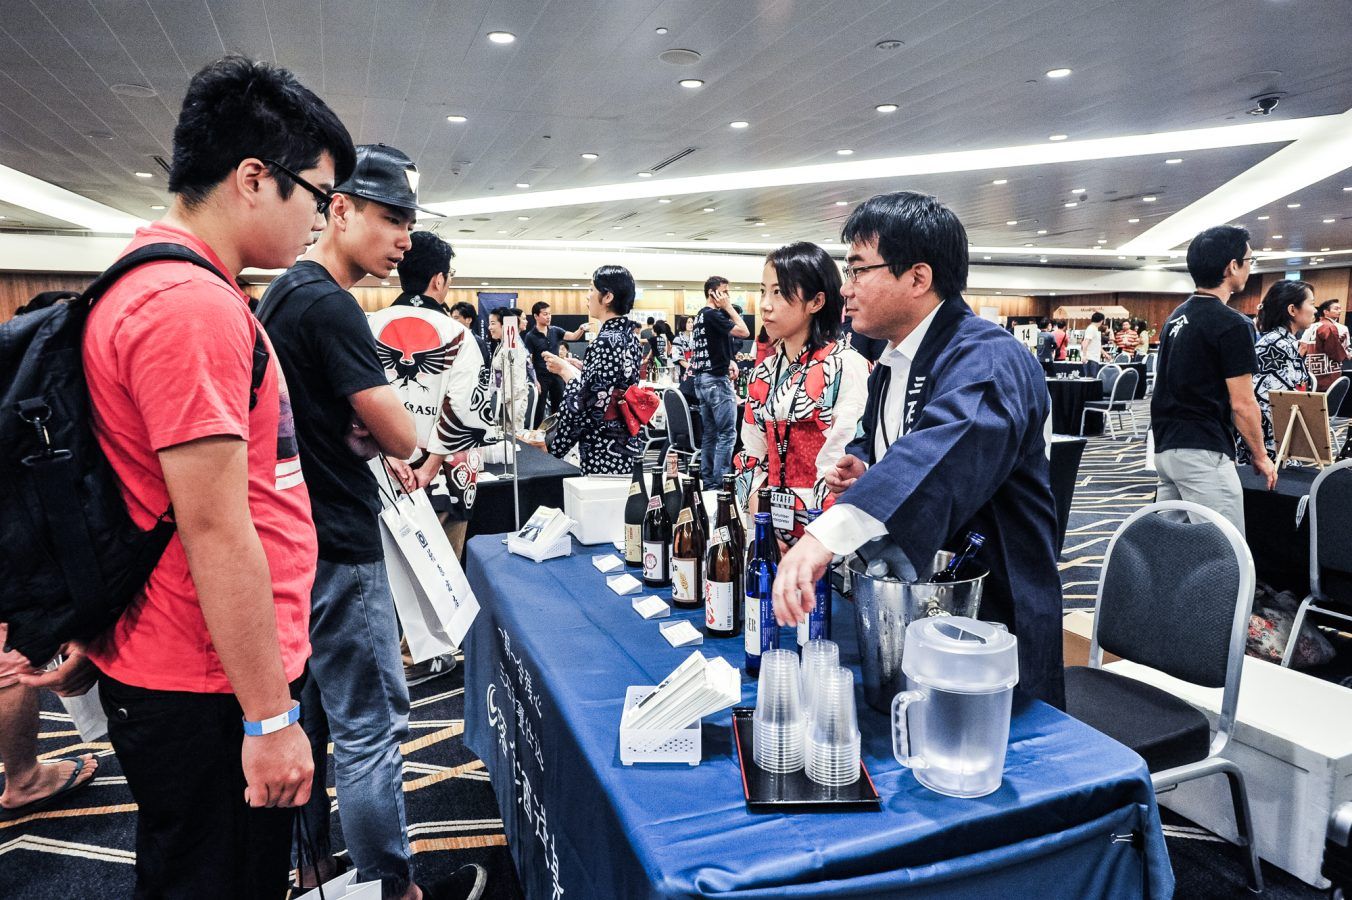 Sake Festival Singapore returns on 17 June 2023 with rare sakes